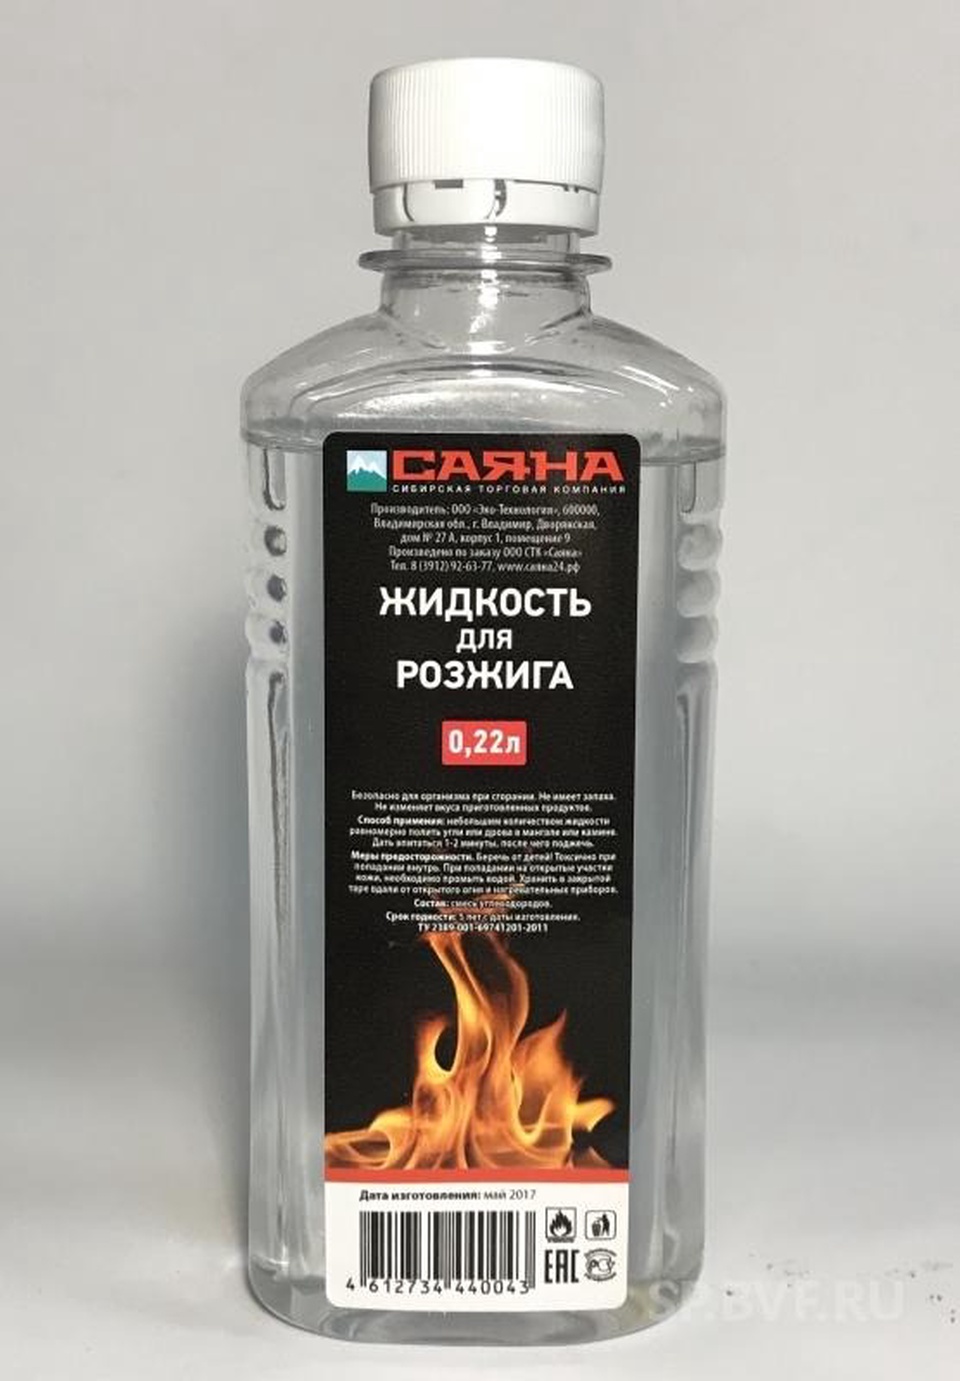 Жидкость для розжига - 79 ₽, заказать онлайн.